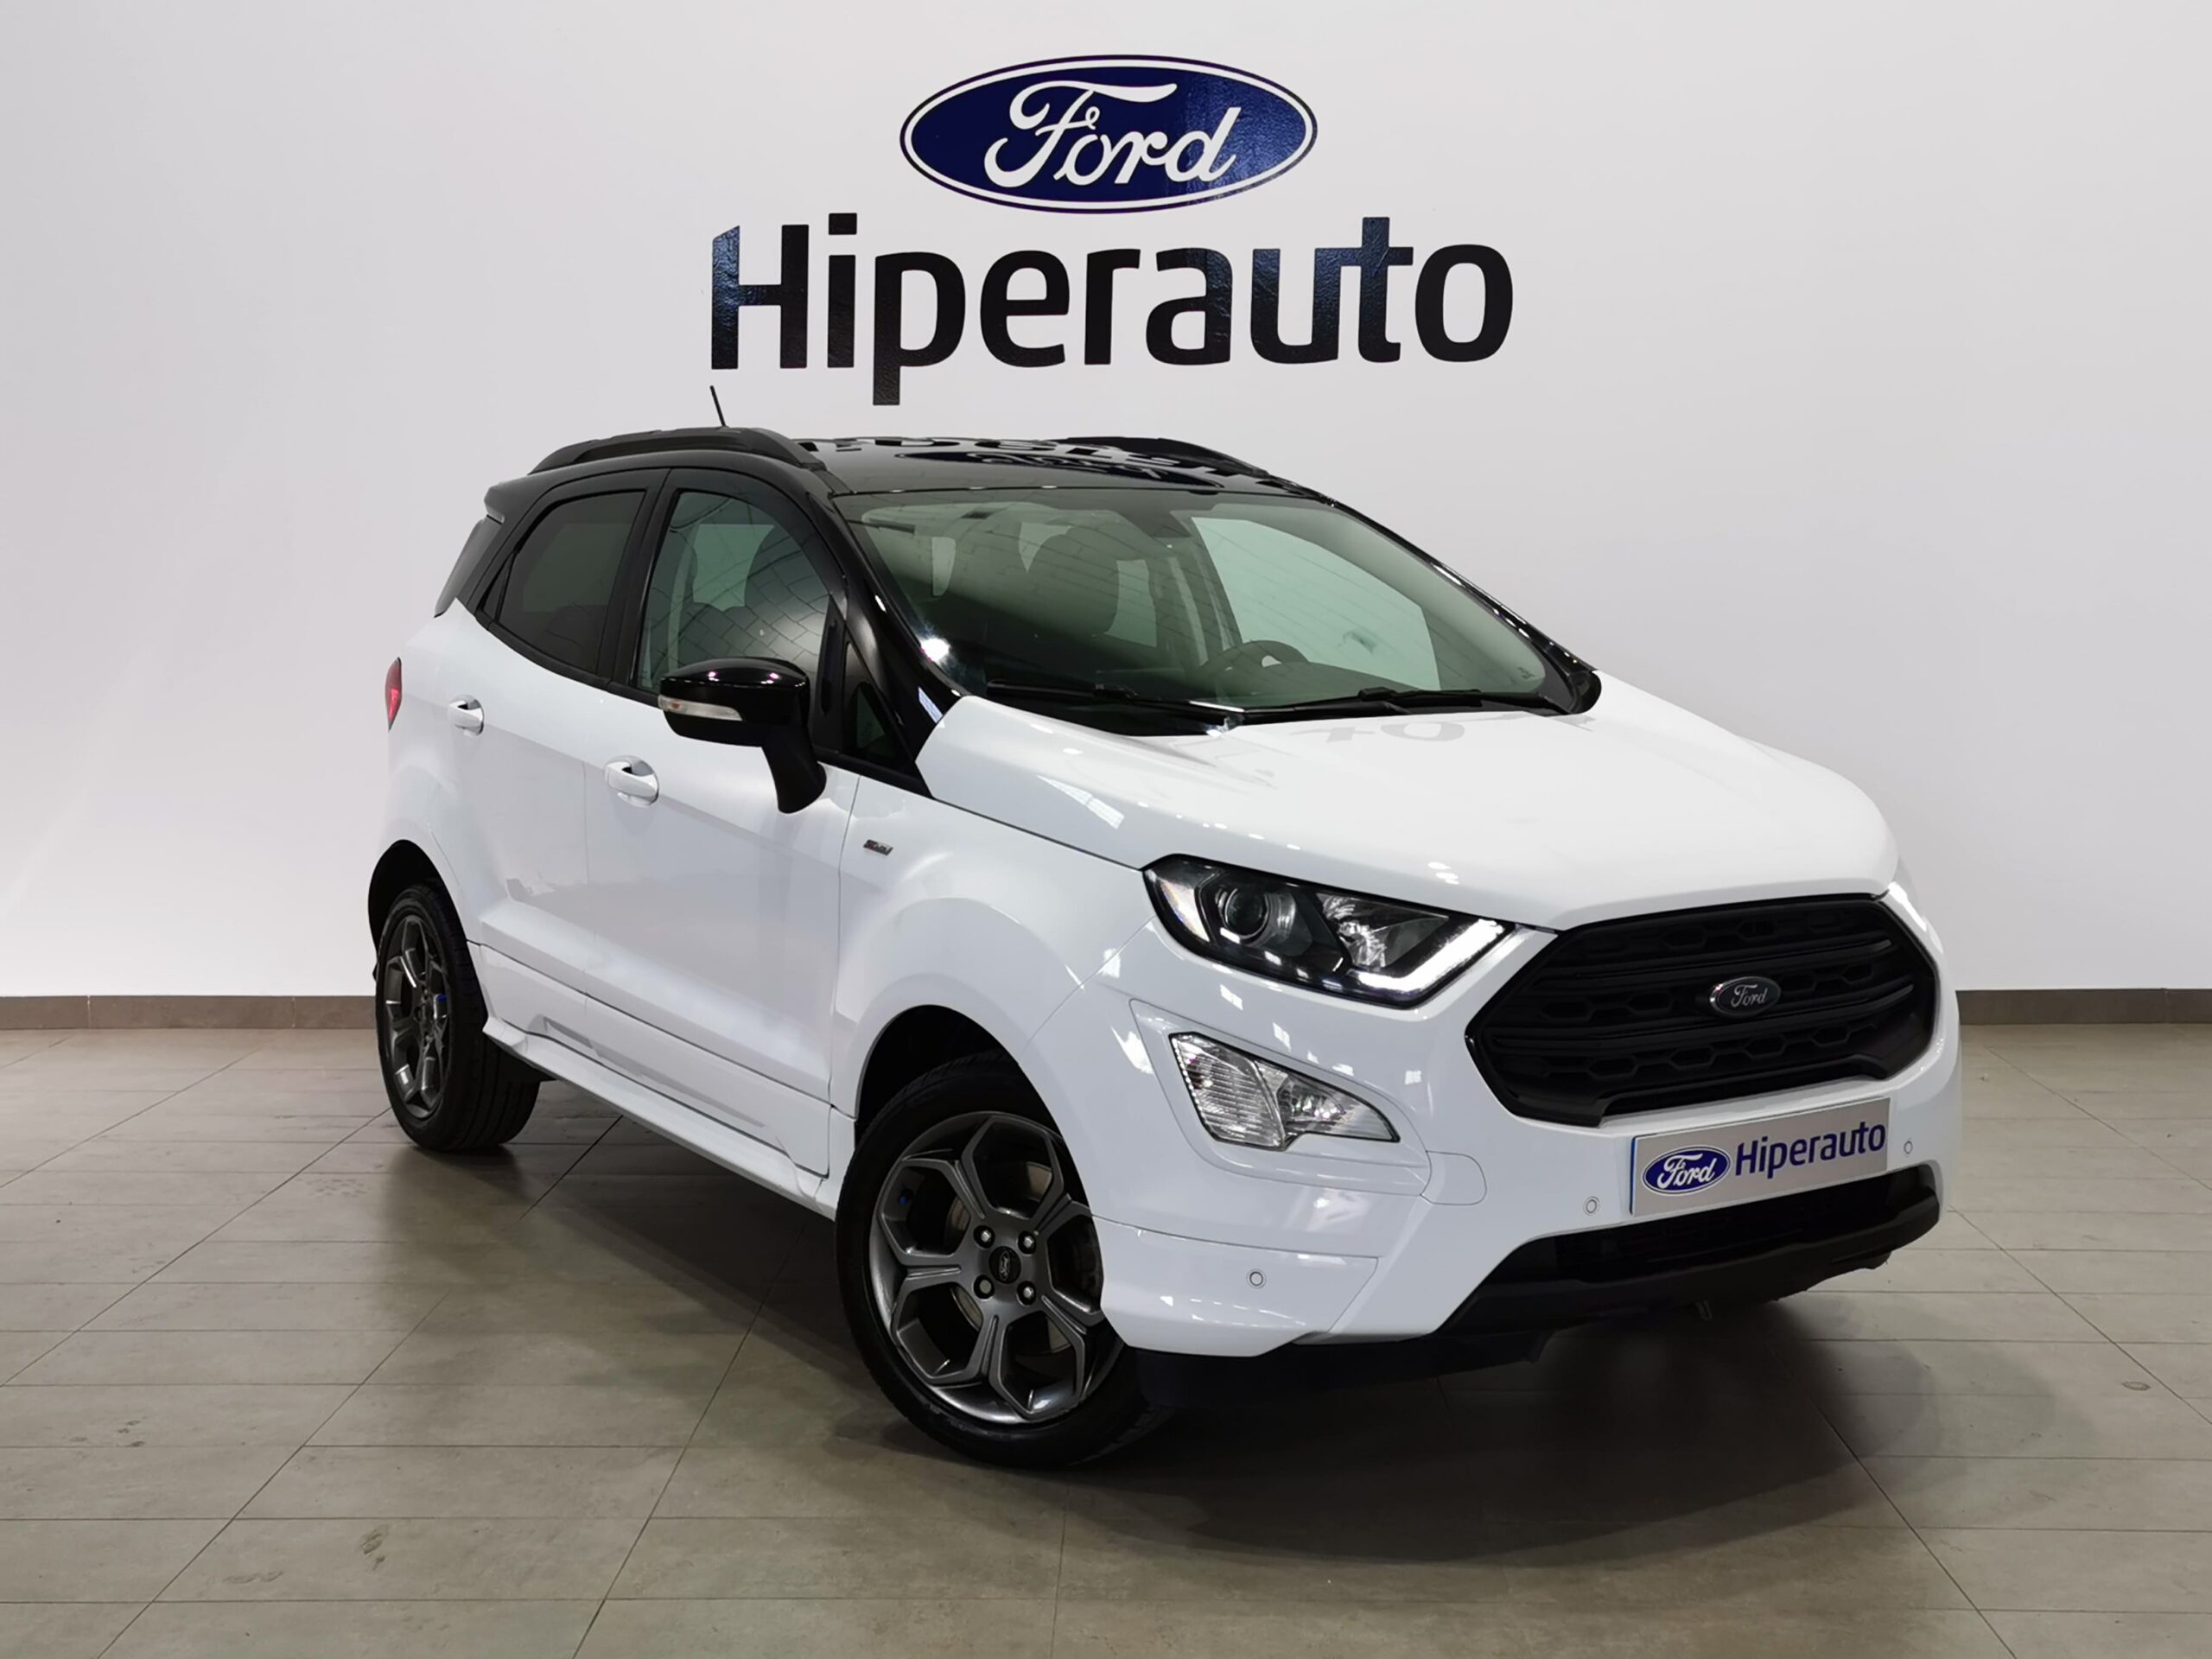 - Hiperauto | Concesionario oficial Ford y venta de vehículos de ocasión